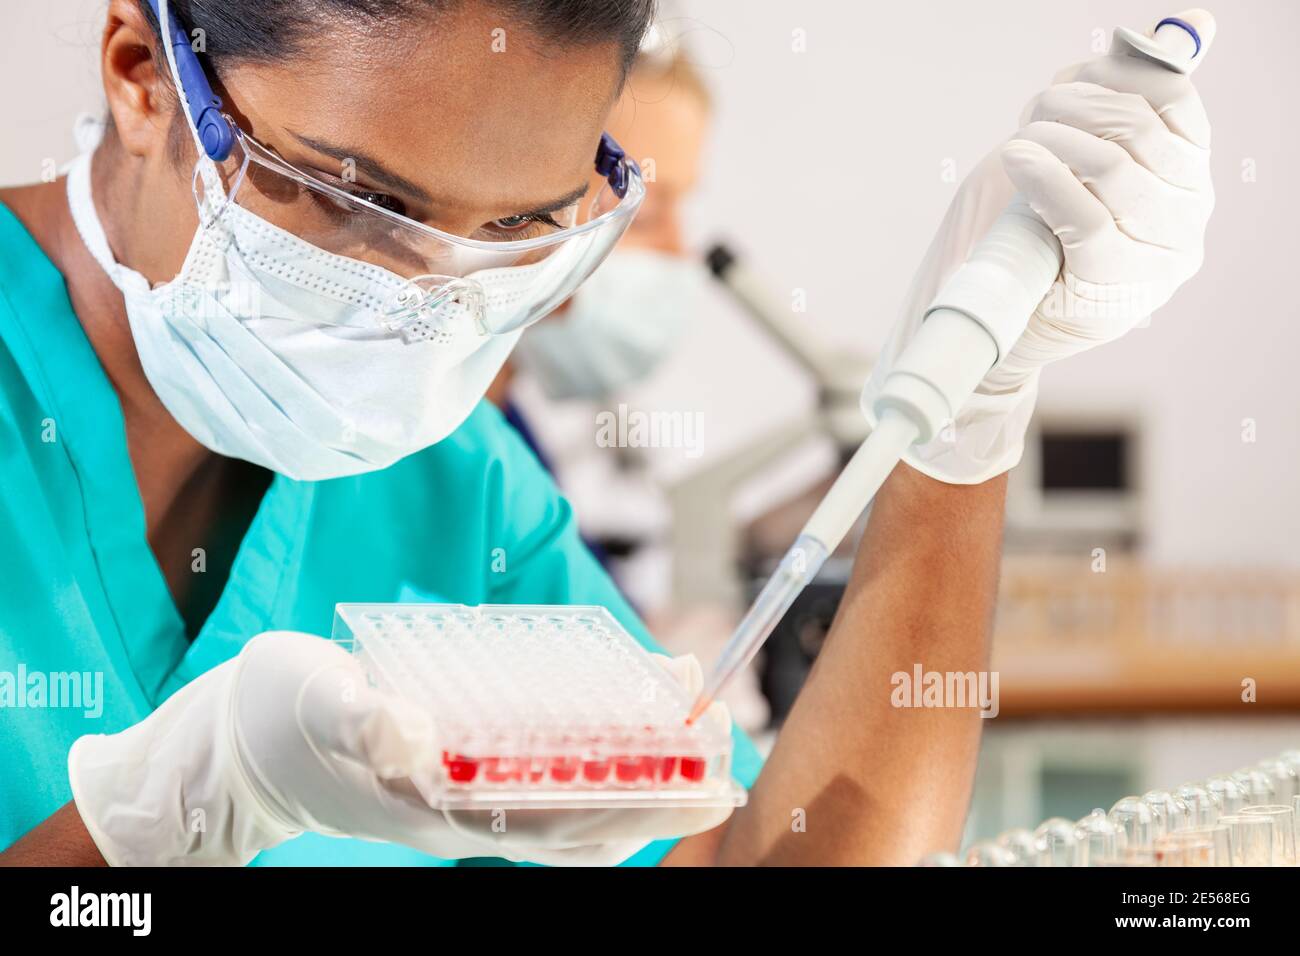 Weibliche asiatische medizinische oder wissenschaftliche Forscher oder Arzt trägt Gesicht Maske mit Probenteller mit Blutproben im Labor Mit ihrem blonden weiblichen coll Stockfoto